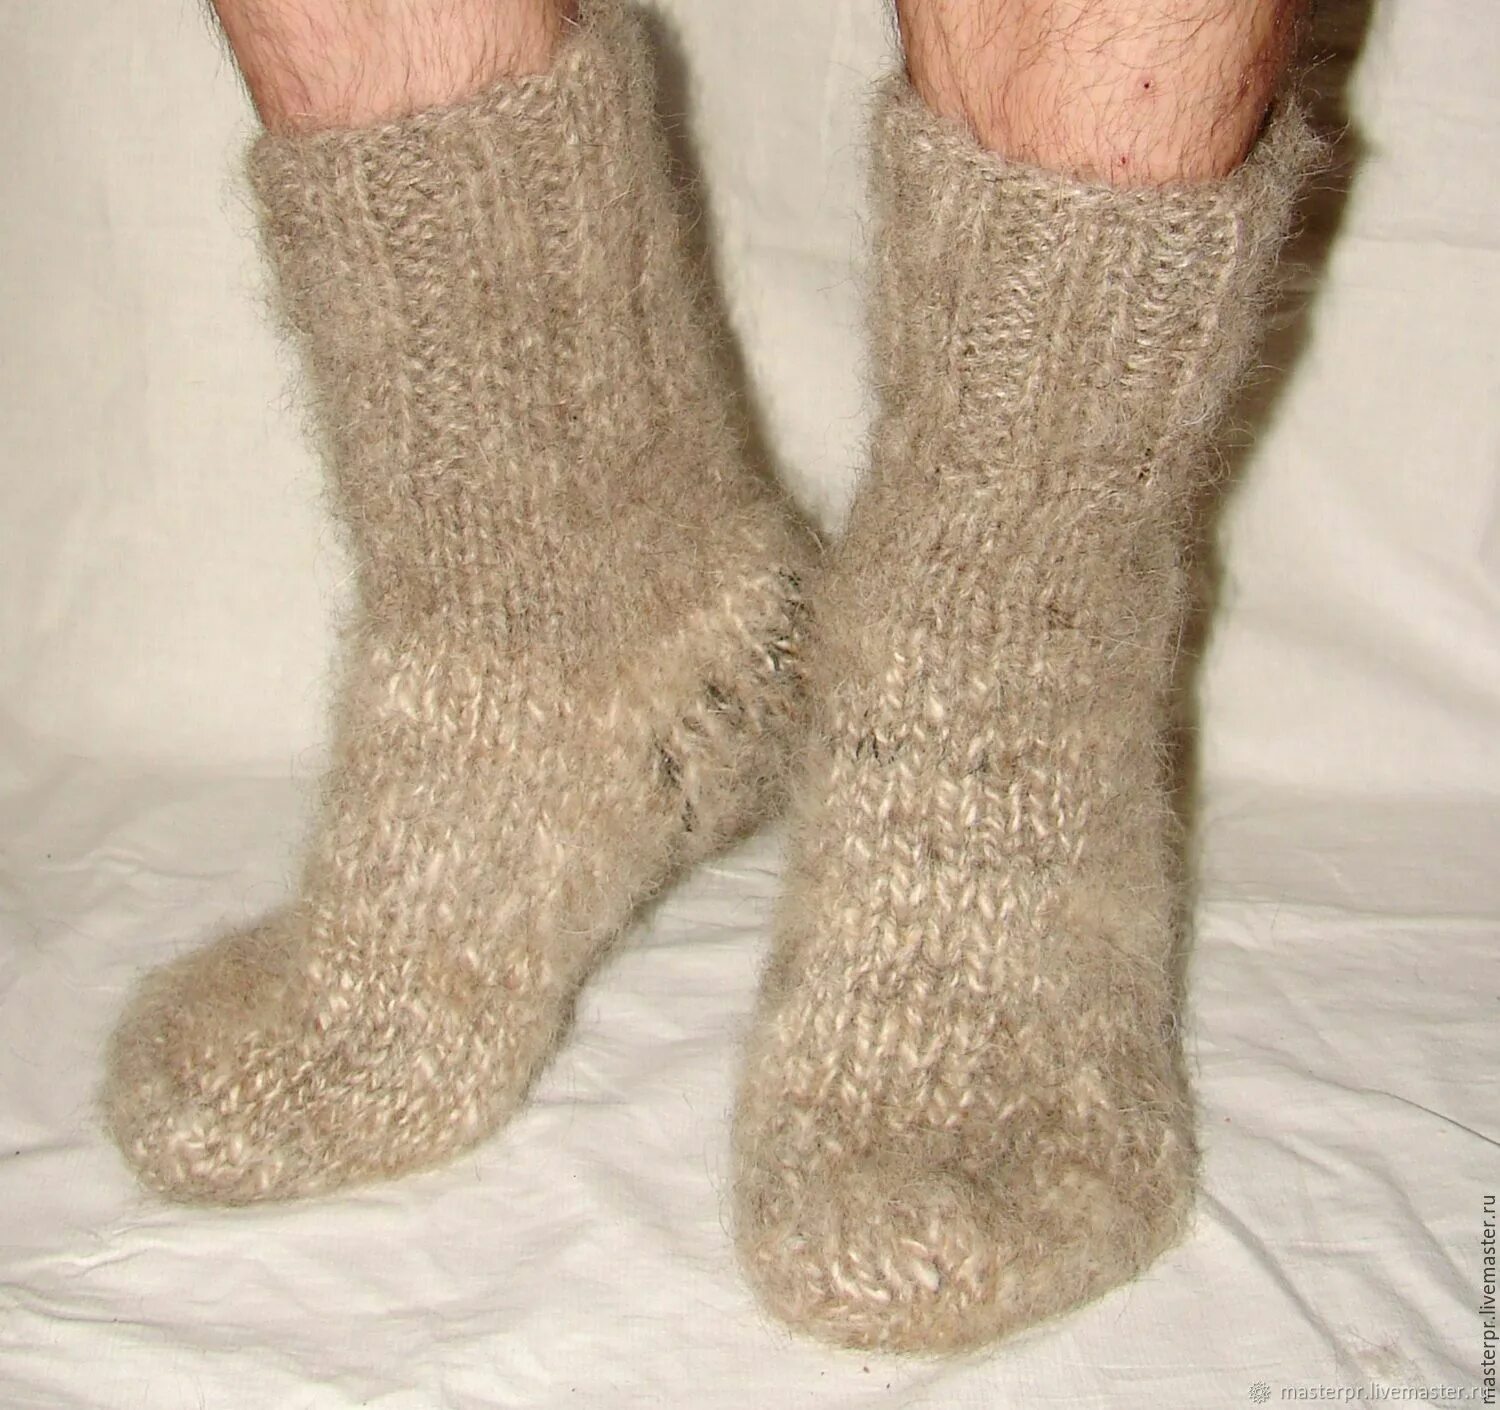 Купить носки на авито. Пуховые носки (арт. Н069). Носки из собачьей шерсти. Носки шерстяные вязаные. Шерстяные носки ручной вязки.